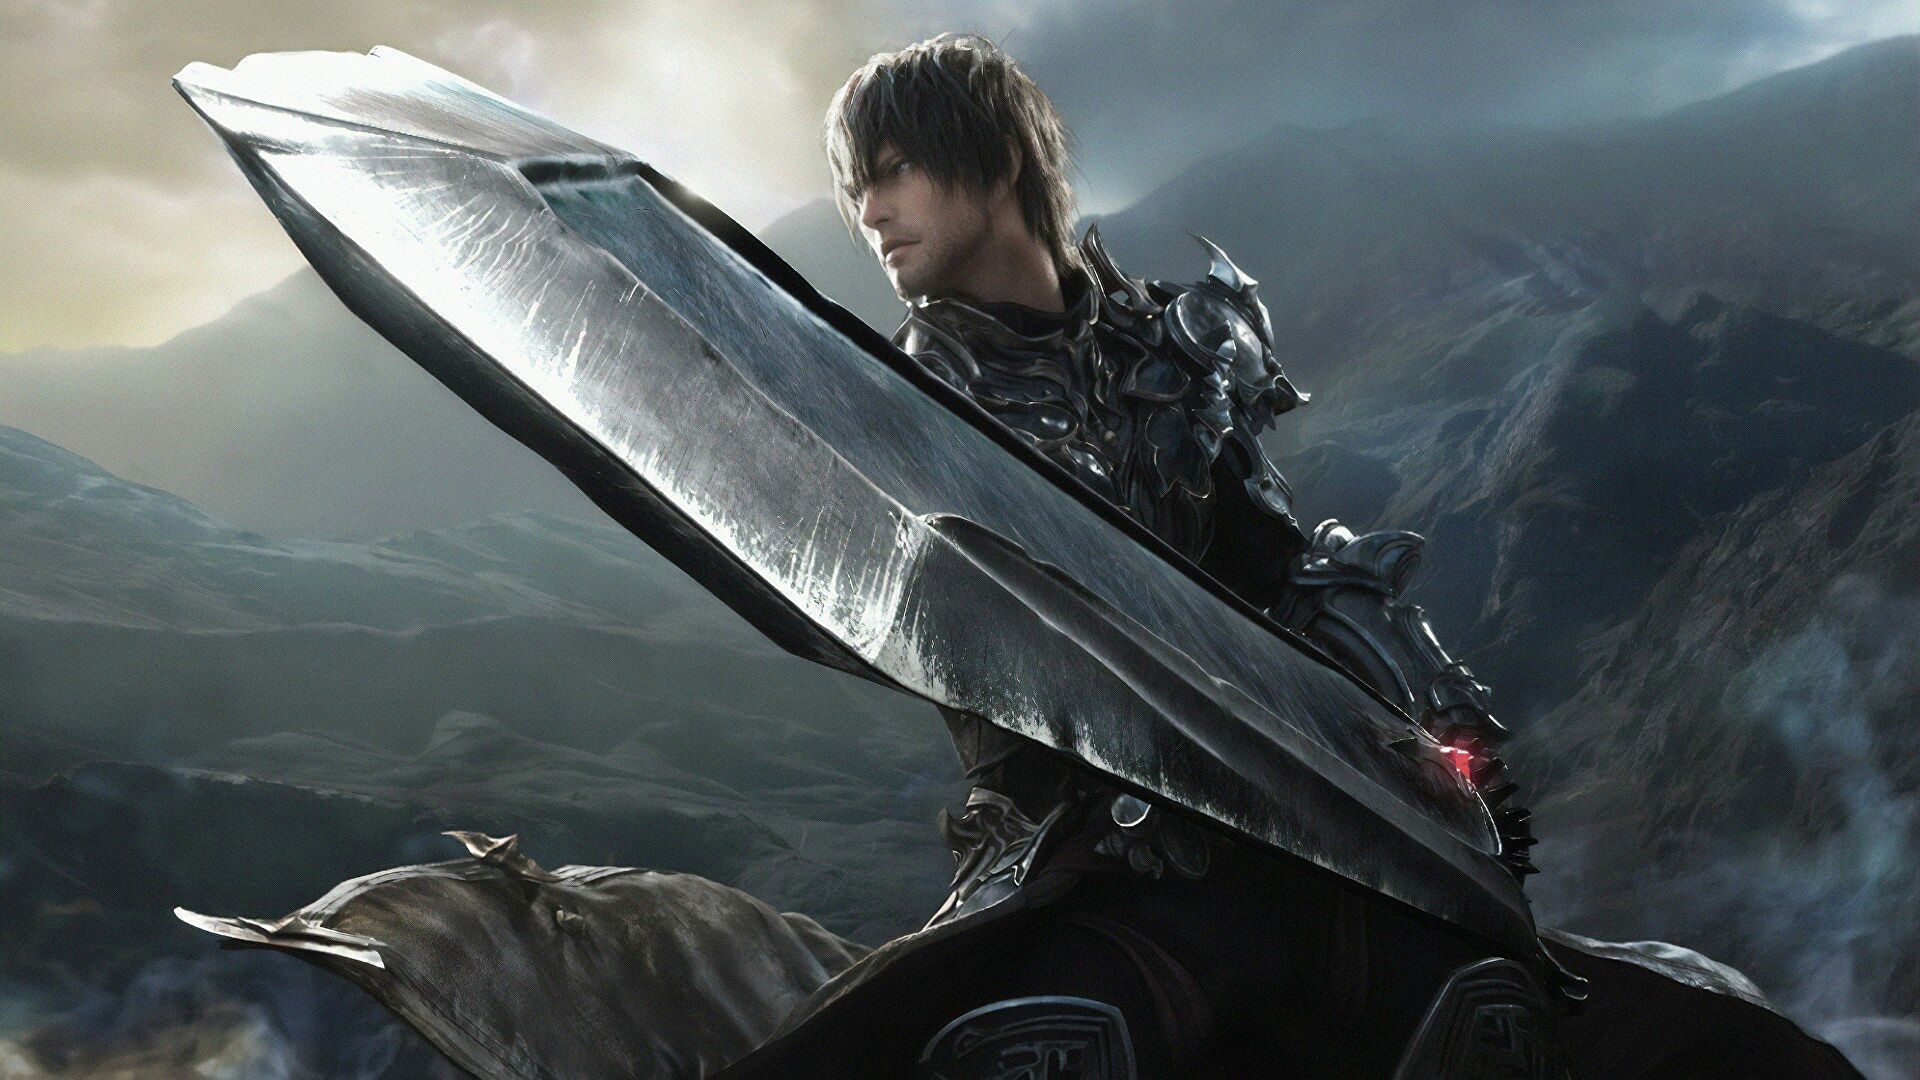 Clive Final Fantasy 16 akan bergabung dengan karakter kedua yang dapat dimainkan